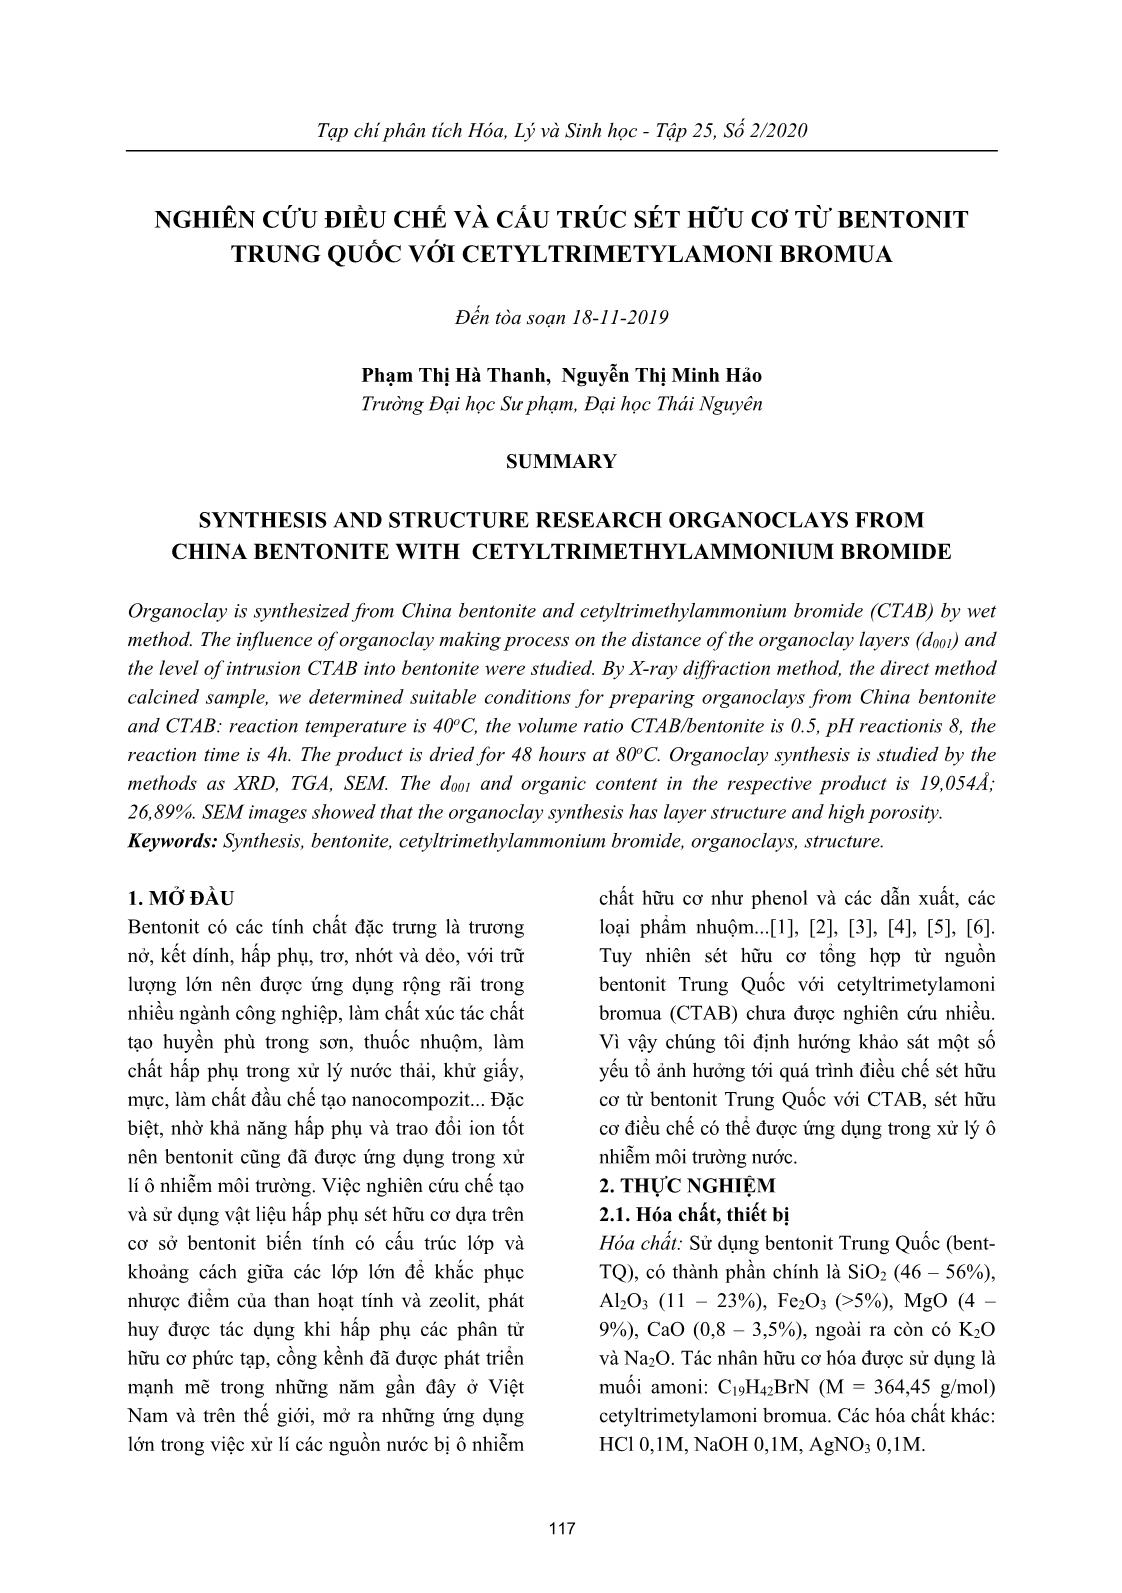 Nghiên cứu điều chế và cấu trúc sét hữu cơ từ bentonit Trung Quốc với cetyltrimetylamoni bromua trang 1